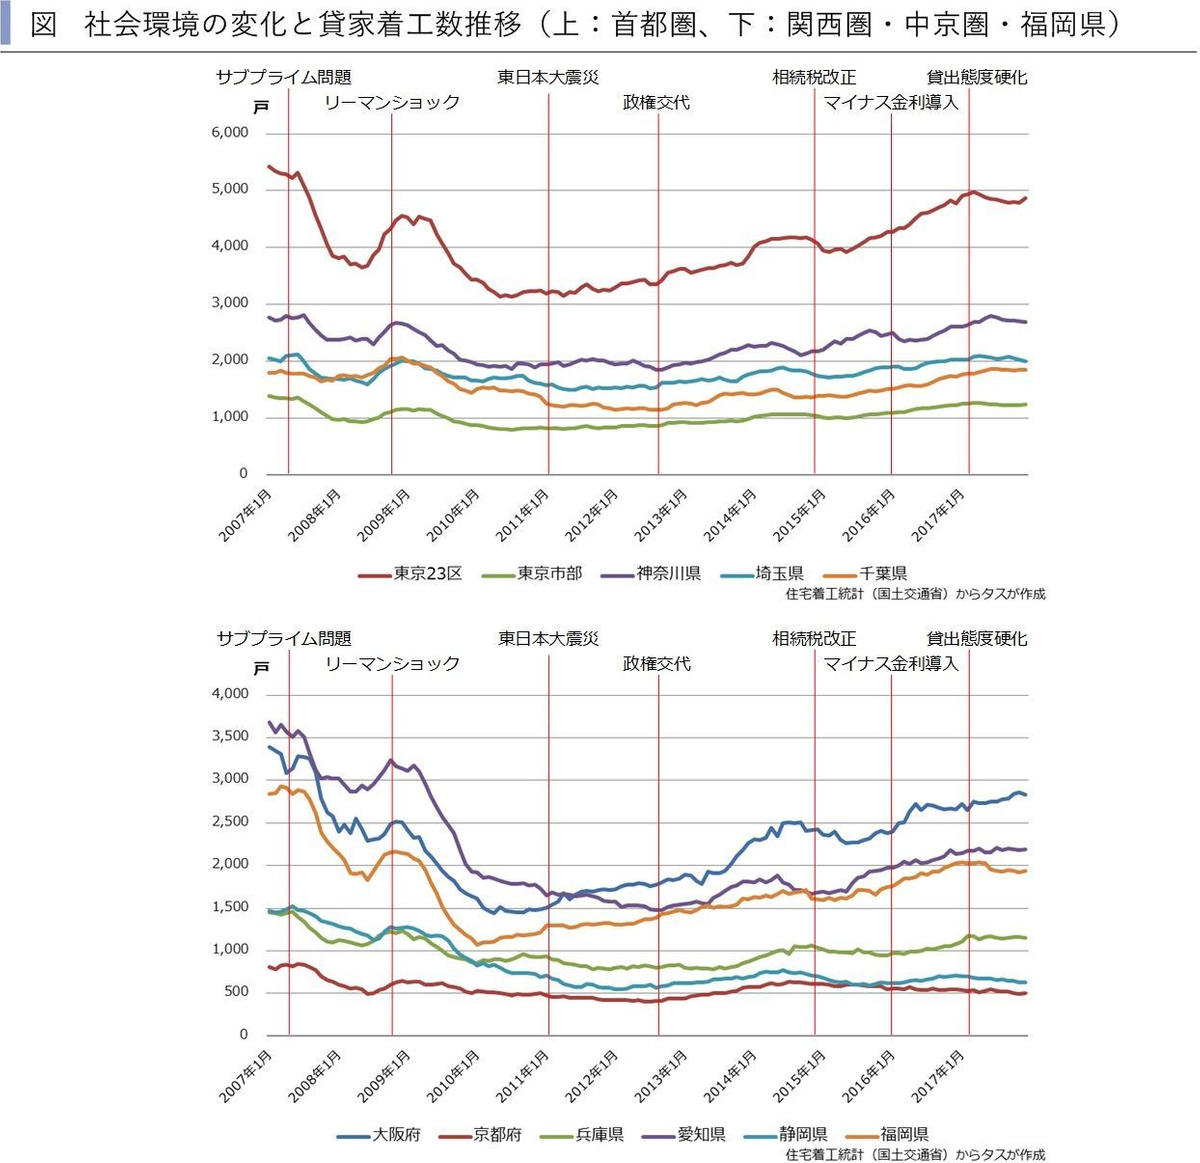 マンション系 アパート系ともに 東京市部で空室率tviの悪化が続く 関西圏 中京圏 福岡県ではアパート系空室率tviが 全地域で前月比改善 newscast